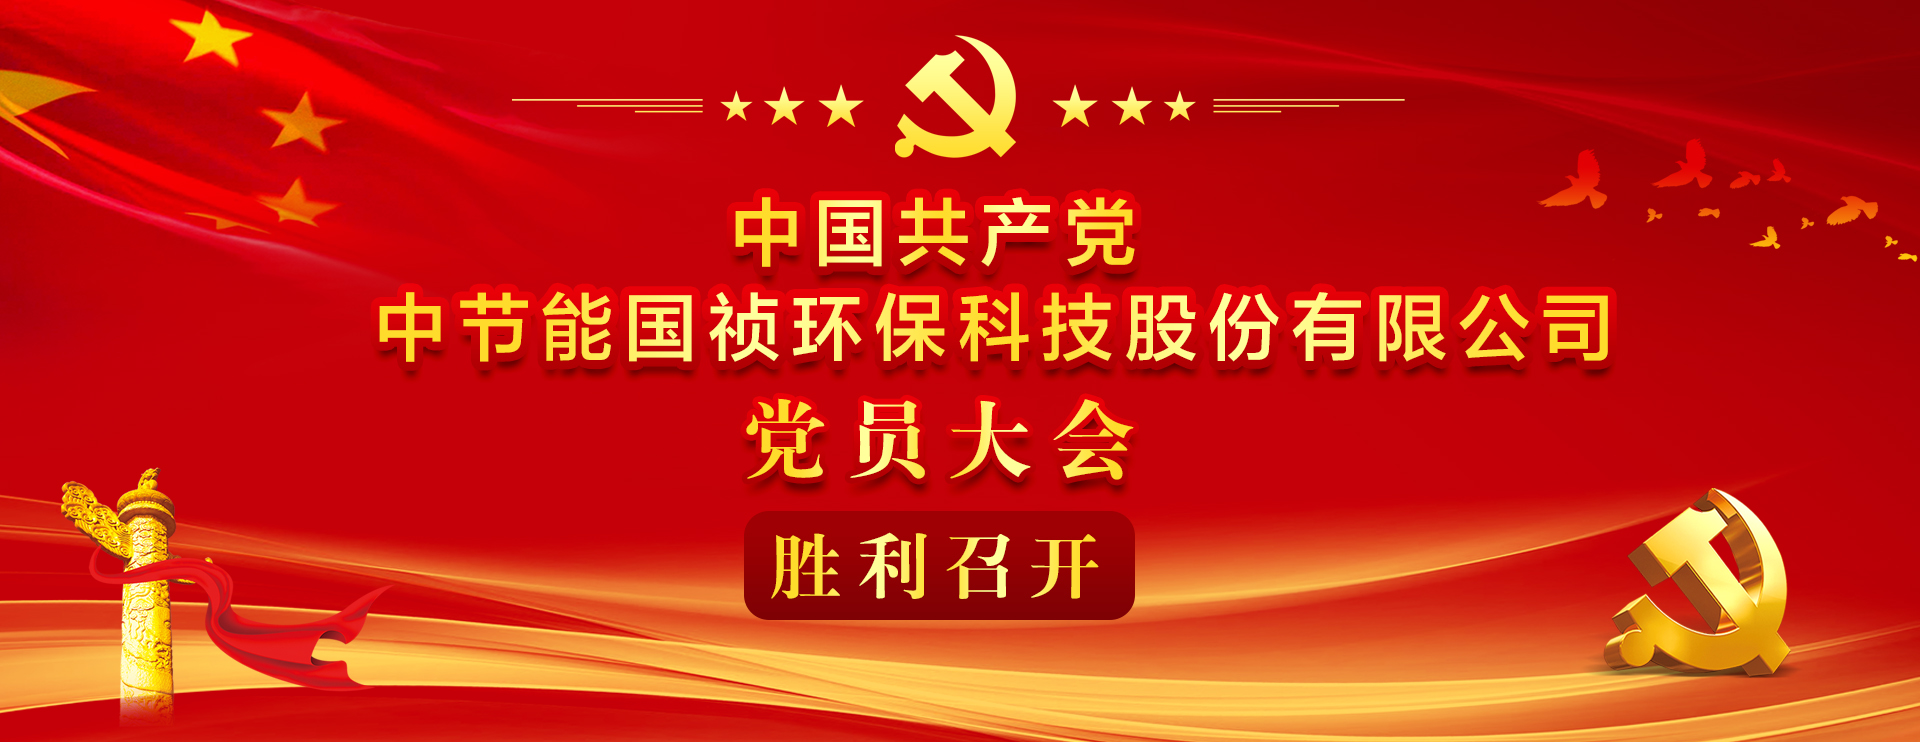 中国共产党中节能国祯环保科技股份有限公司党员大会胜利召开